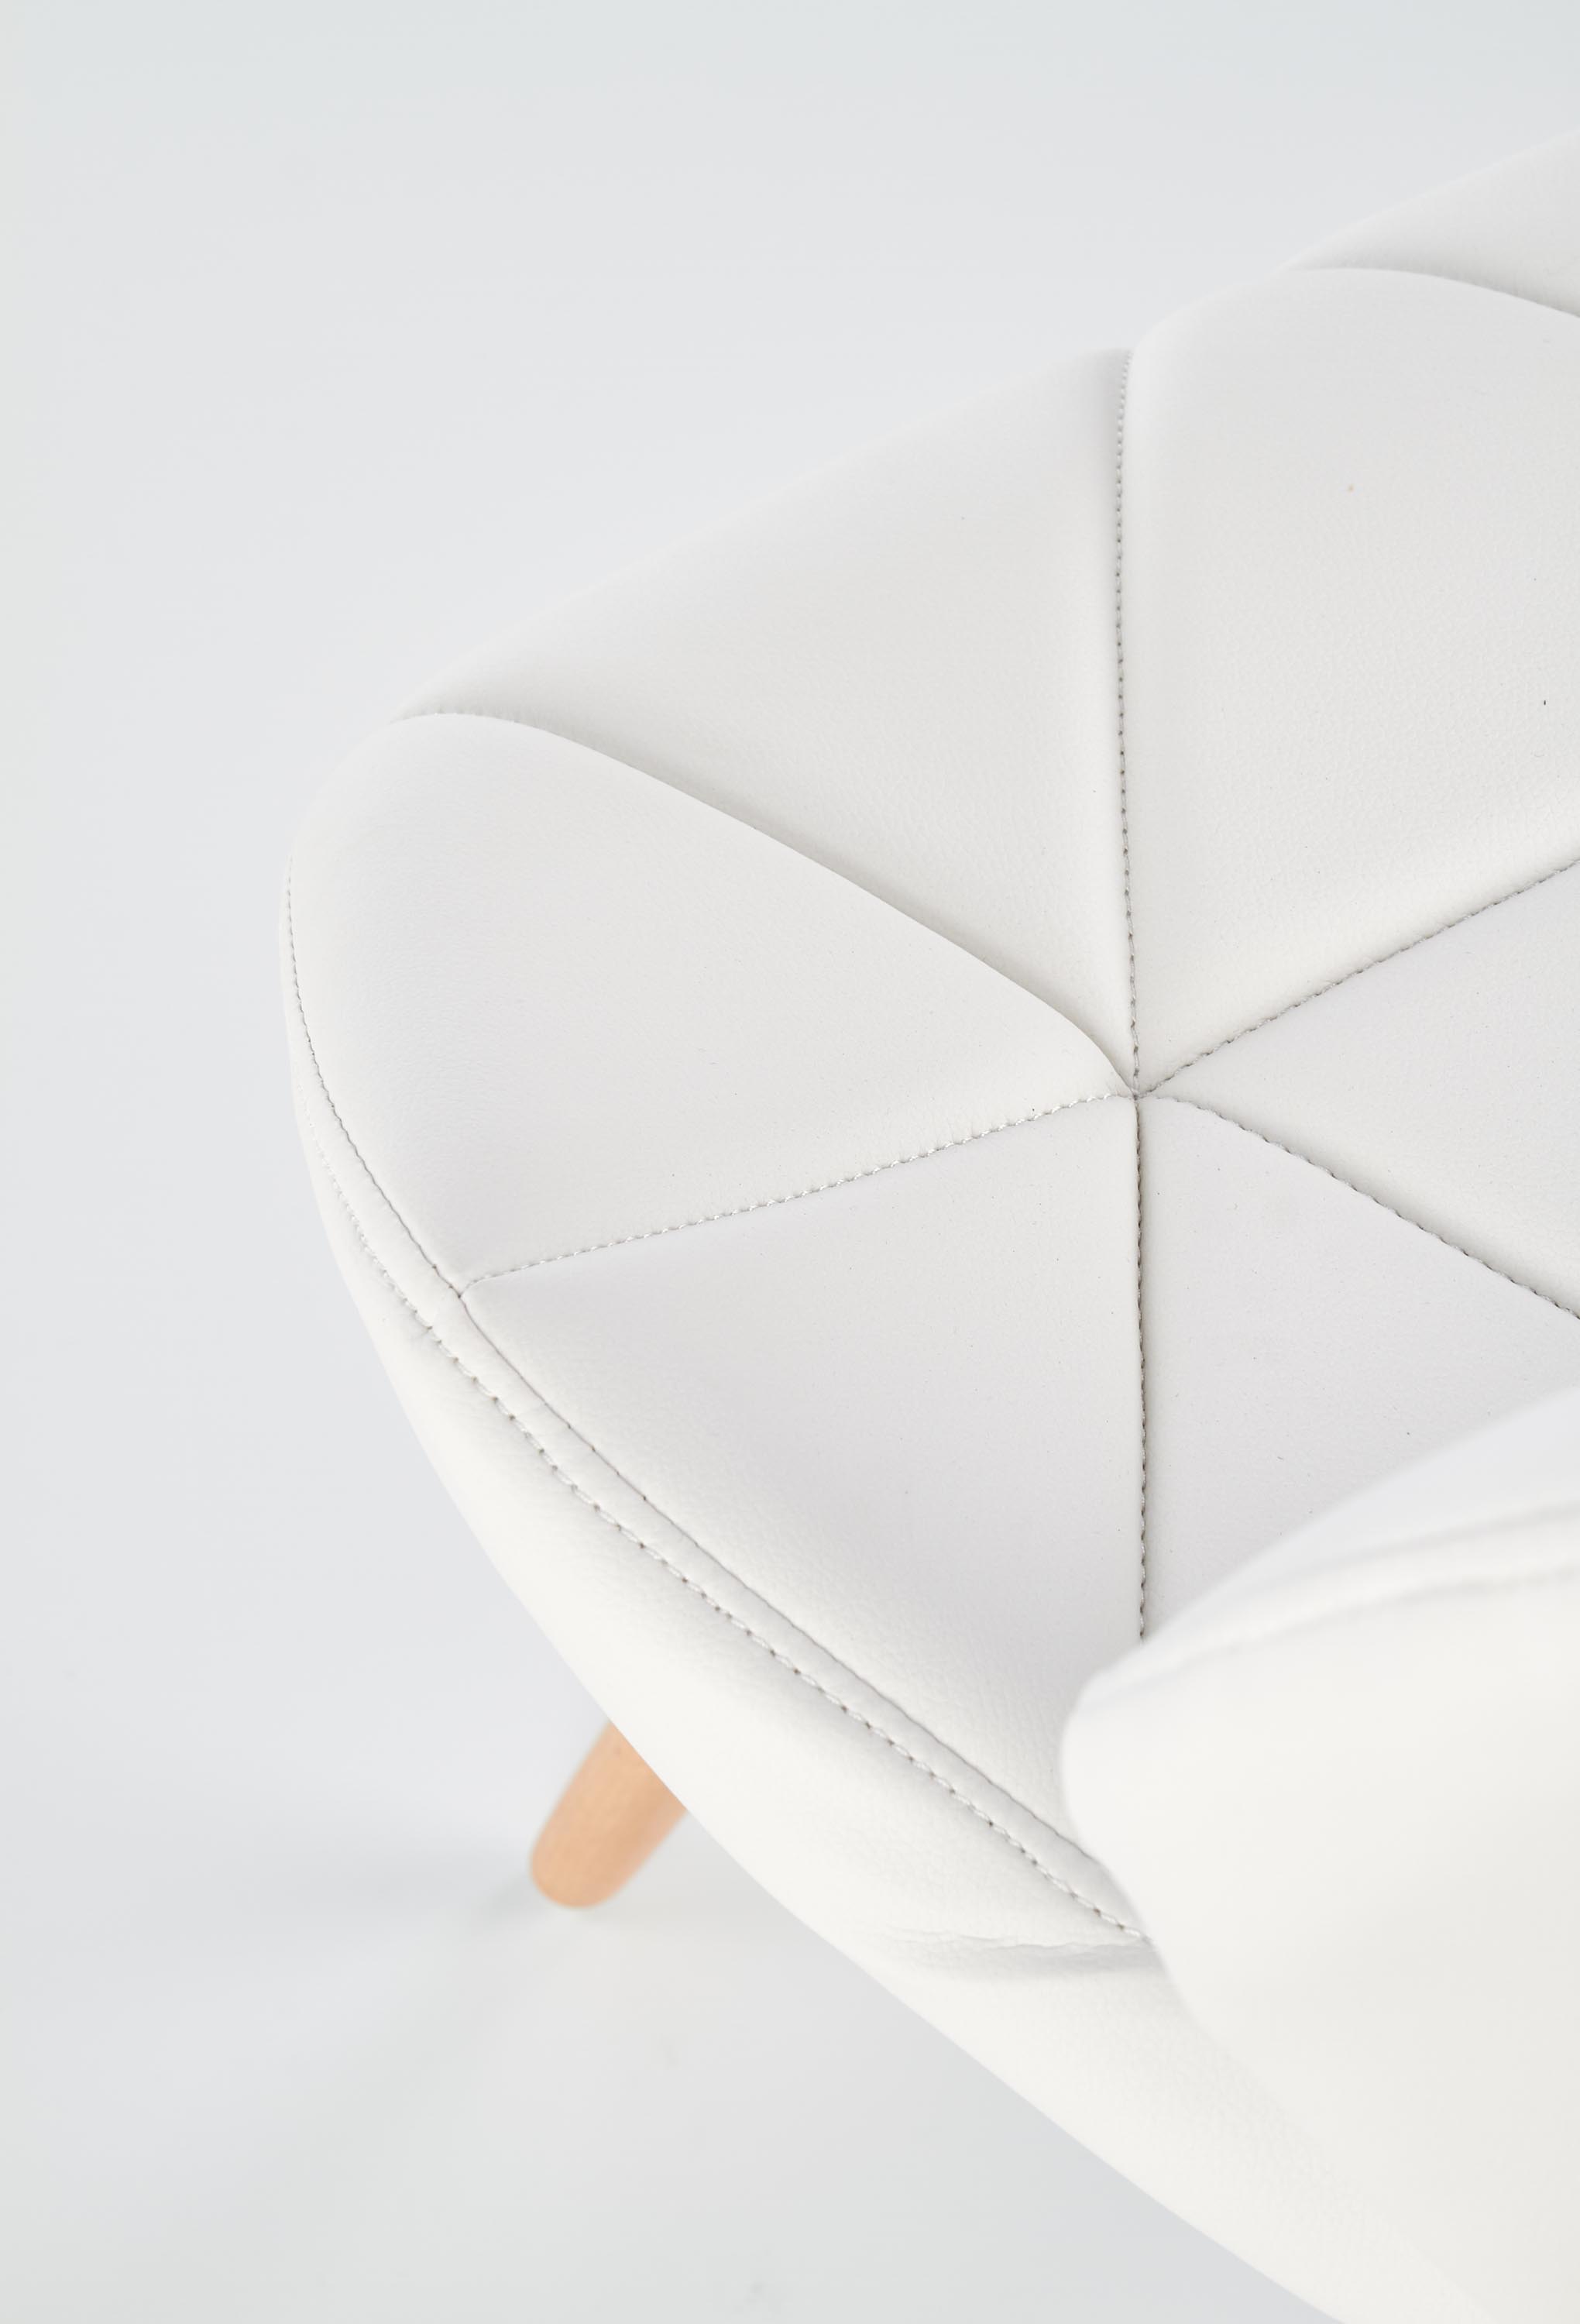 K281 szék - fehér / bükk k281 Židle Bílý / bükk